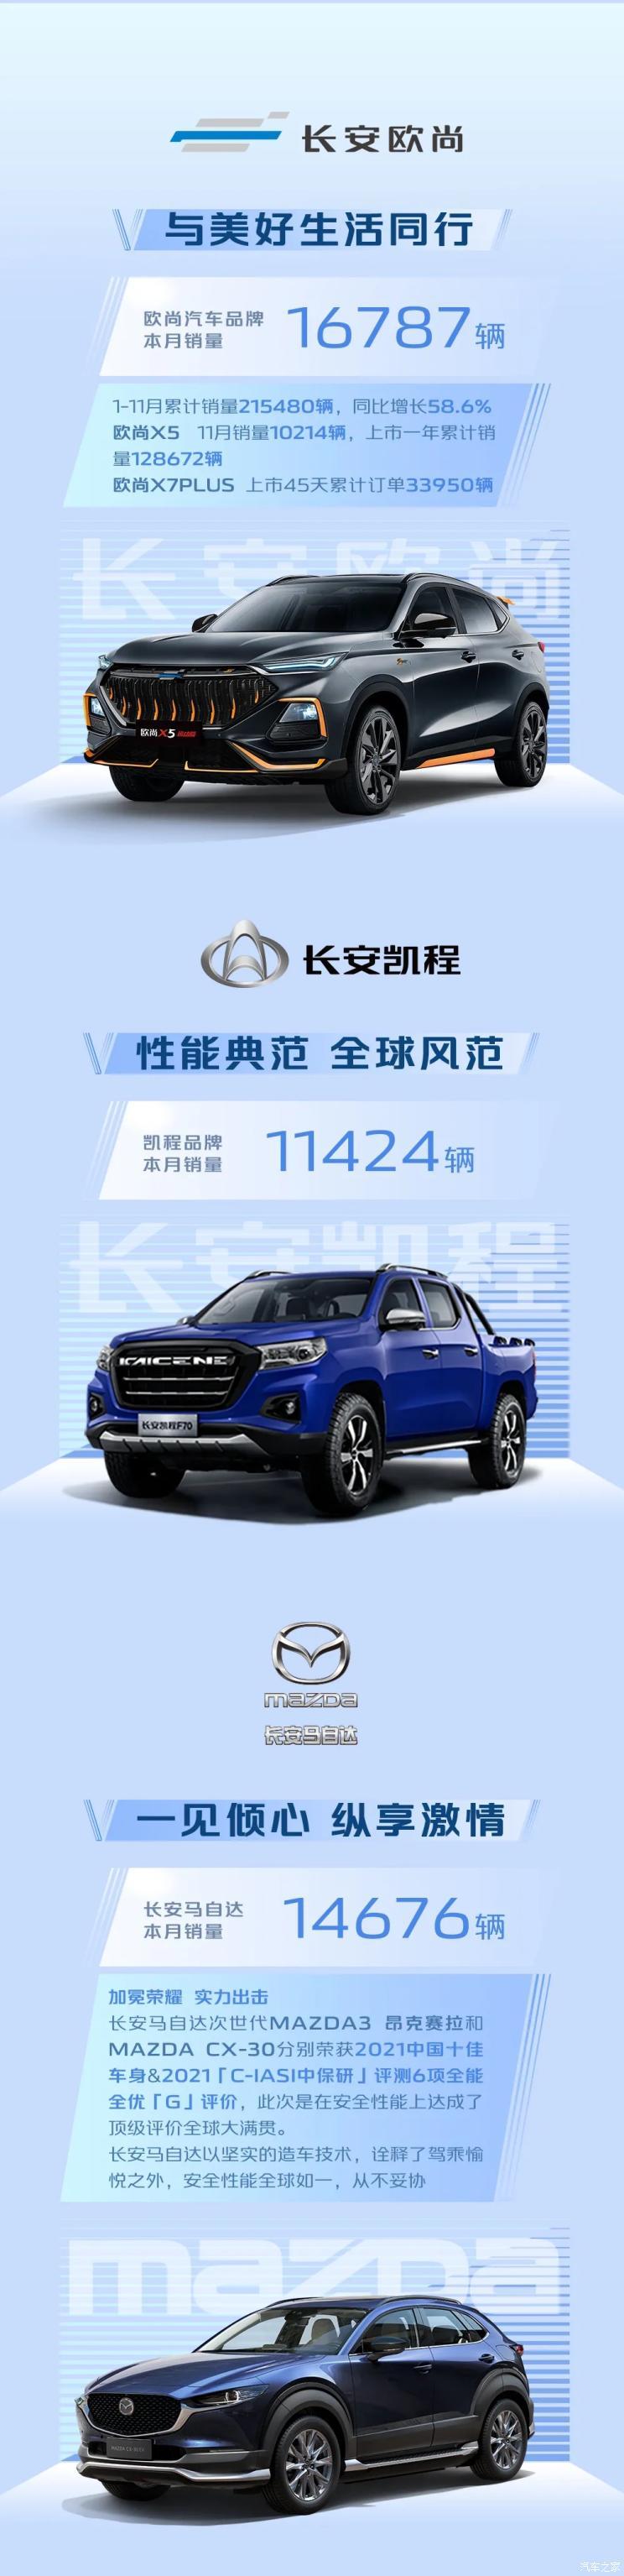 中国品牌表现佳 长安集团公布11月销量